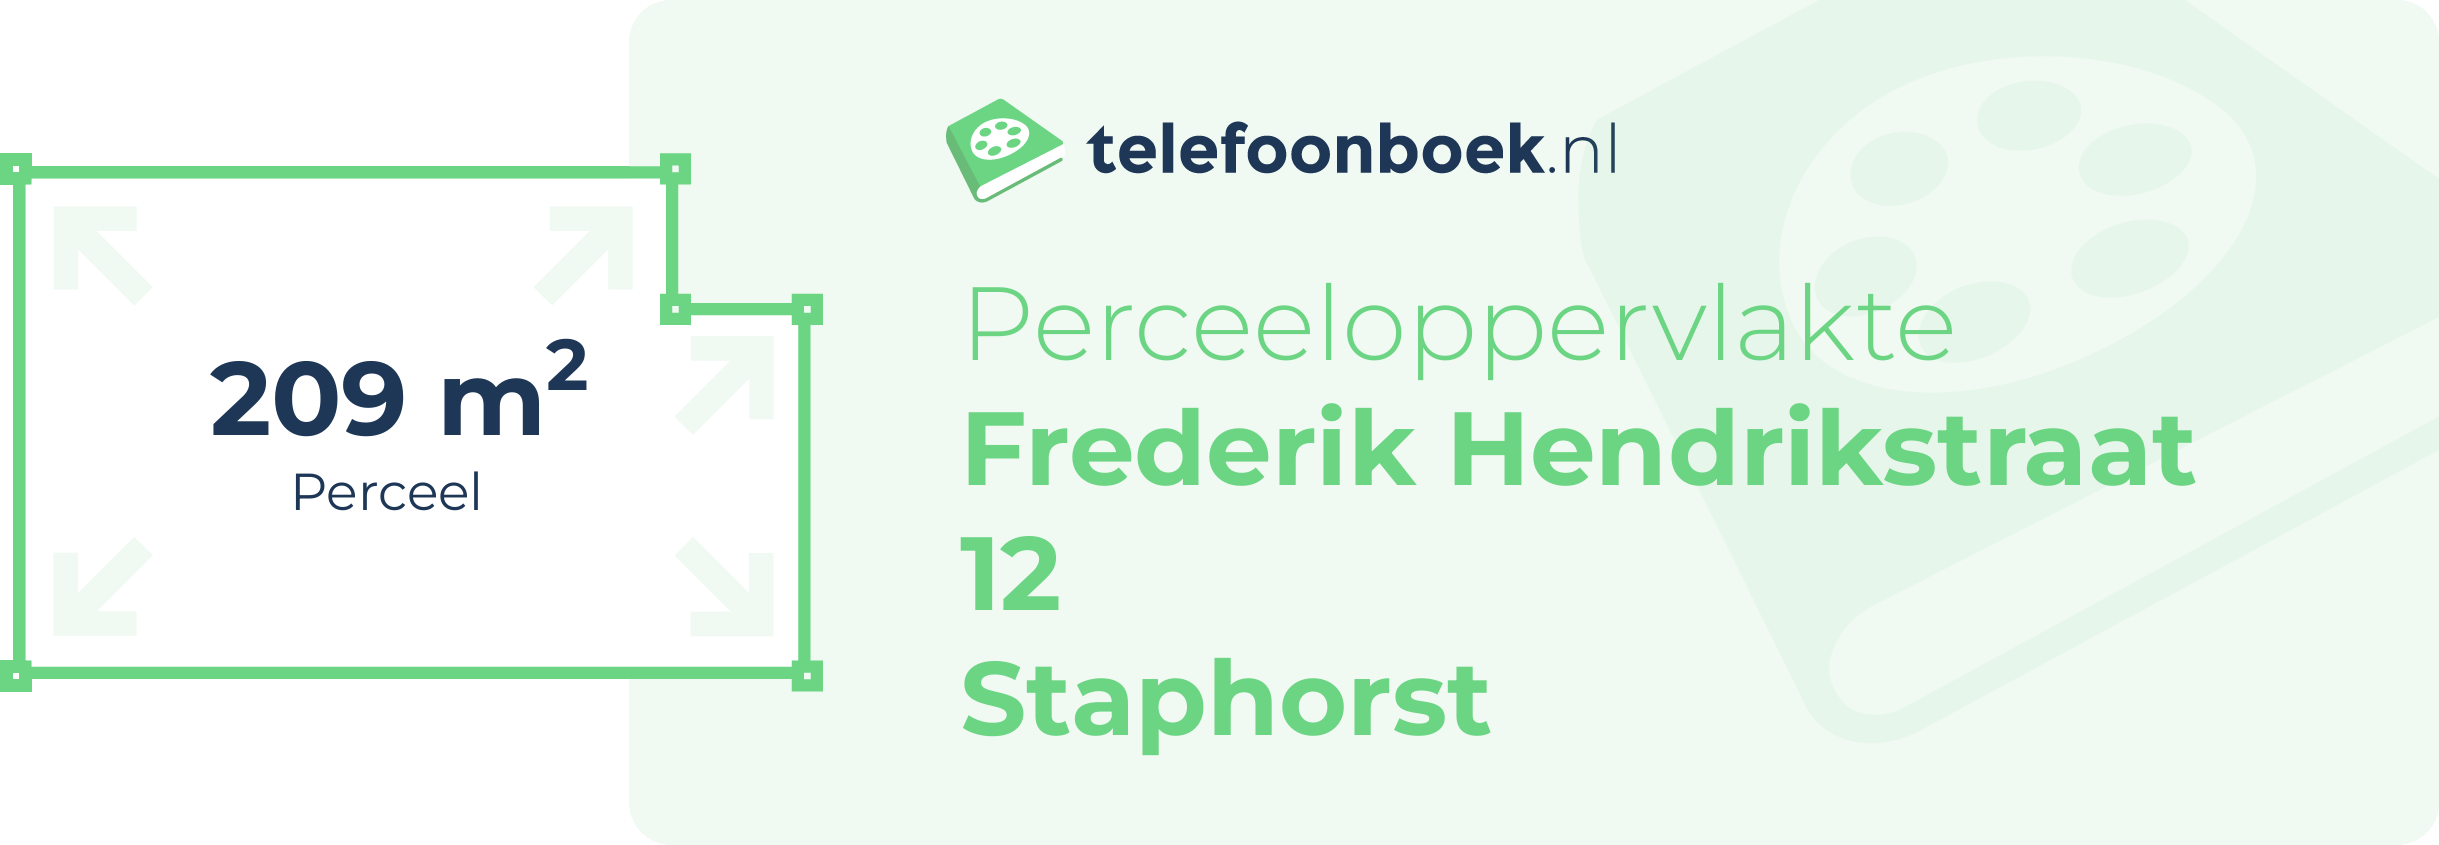 Perceeloppervlakte Frederik Hendrikstraat 12 Staphorst